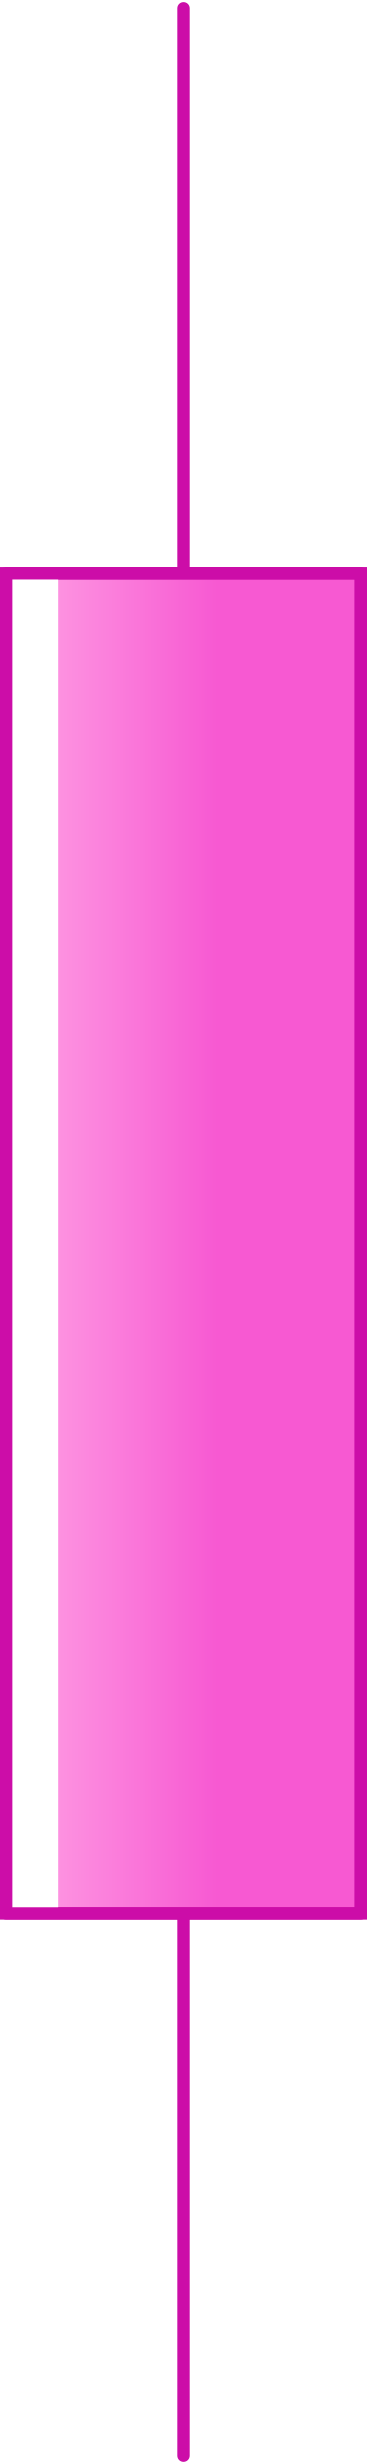 チャート用のピンクのローソク足 PNG、SVG